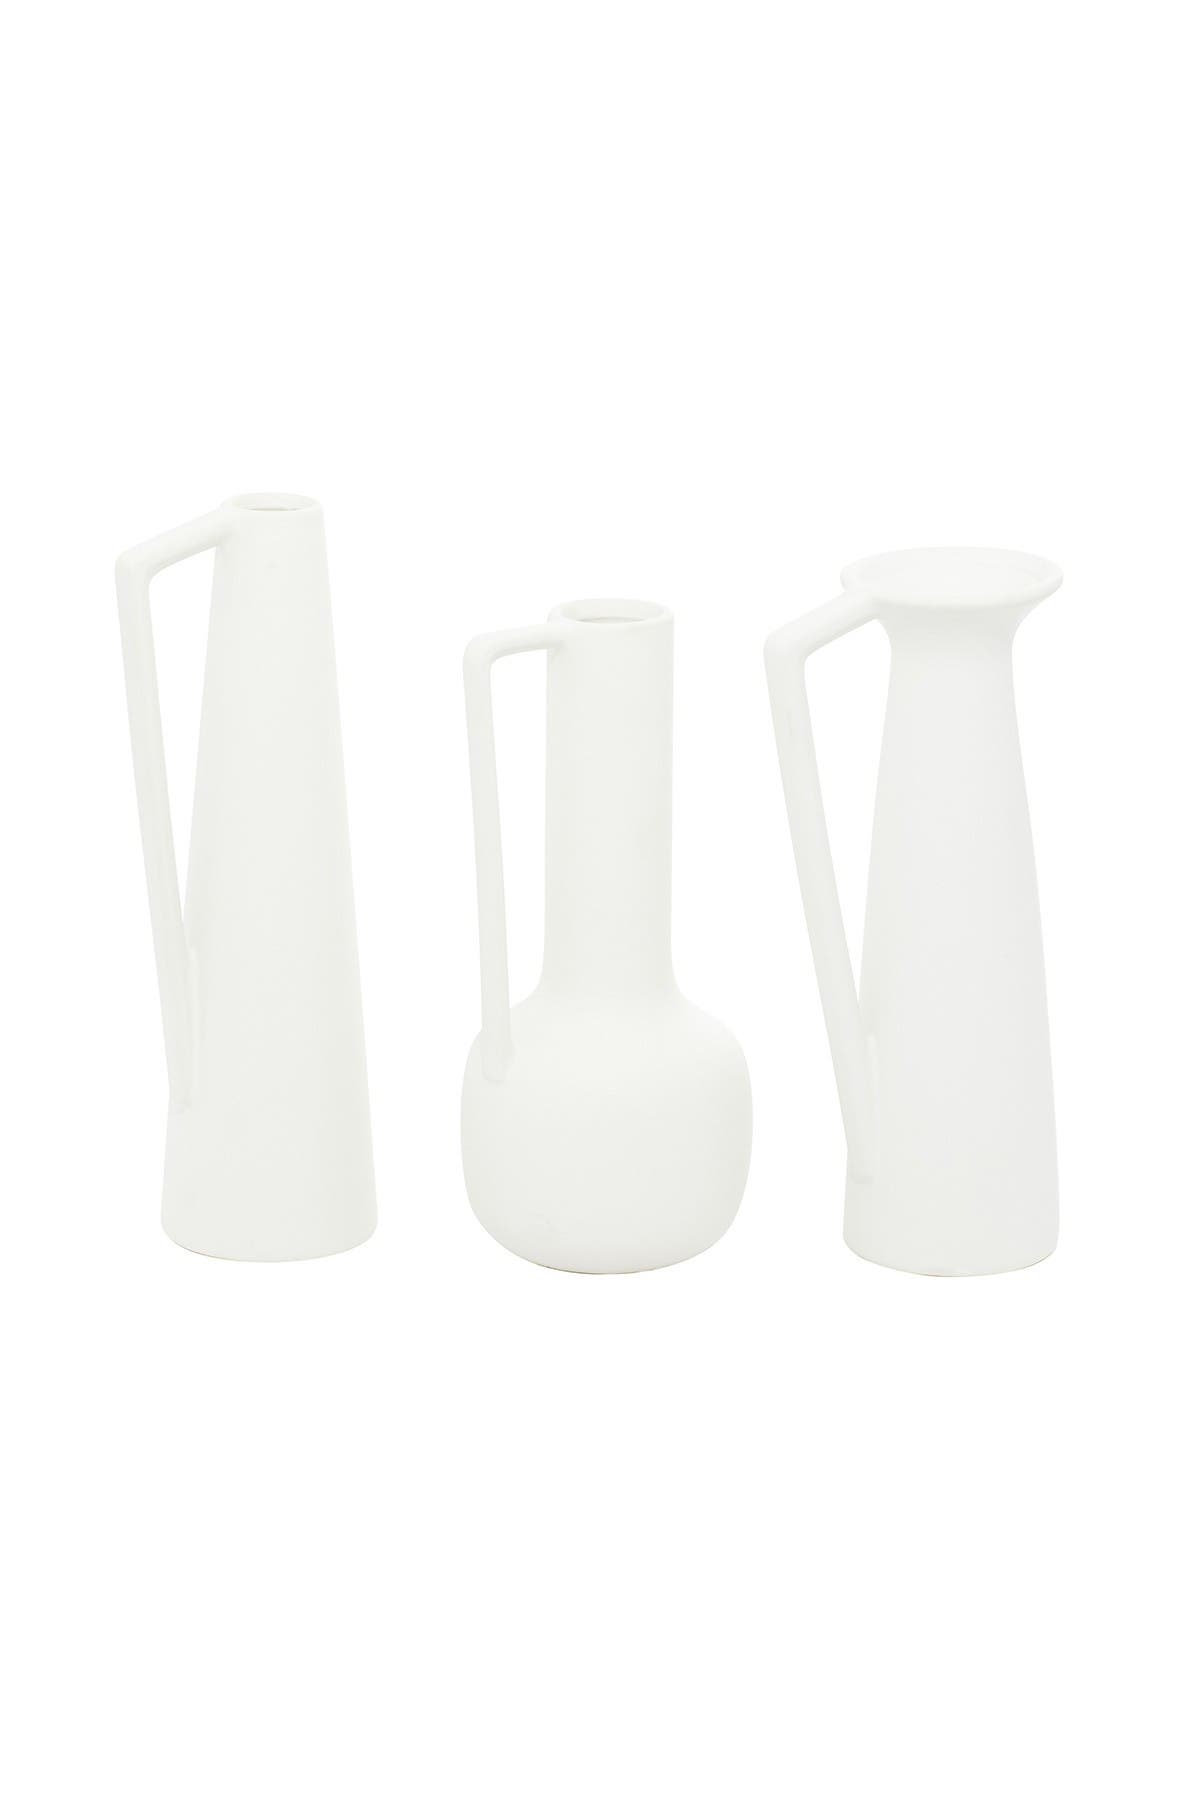 Белая керамическая современная ваза - 13 дюймов, 12 дюймов и 11 дюймов - набор из 3 COSMO BY COSMOPOLITAN